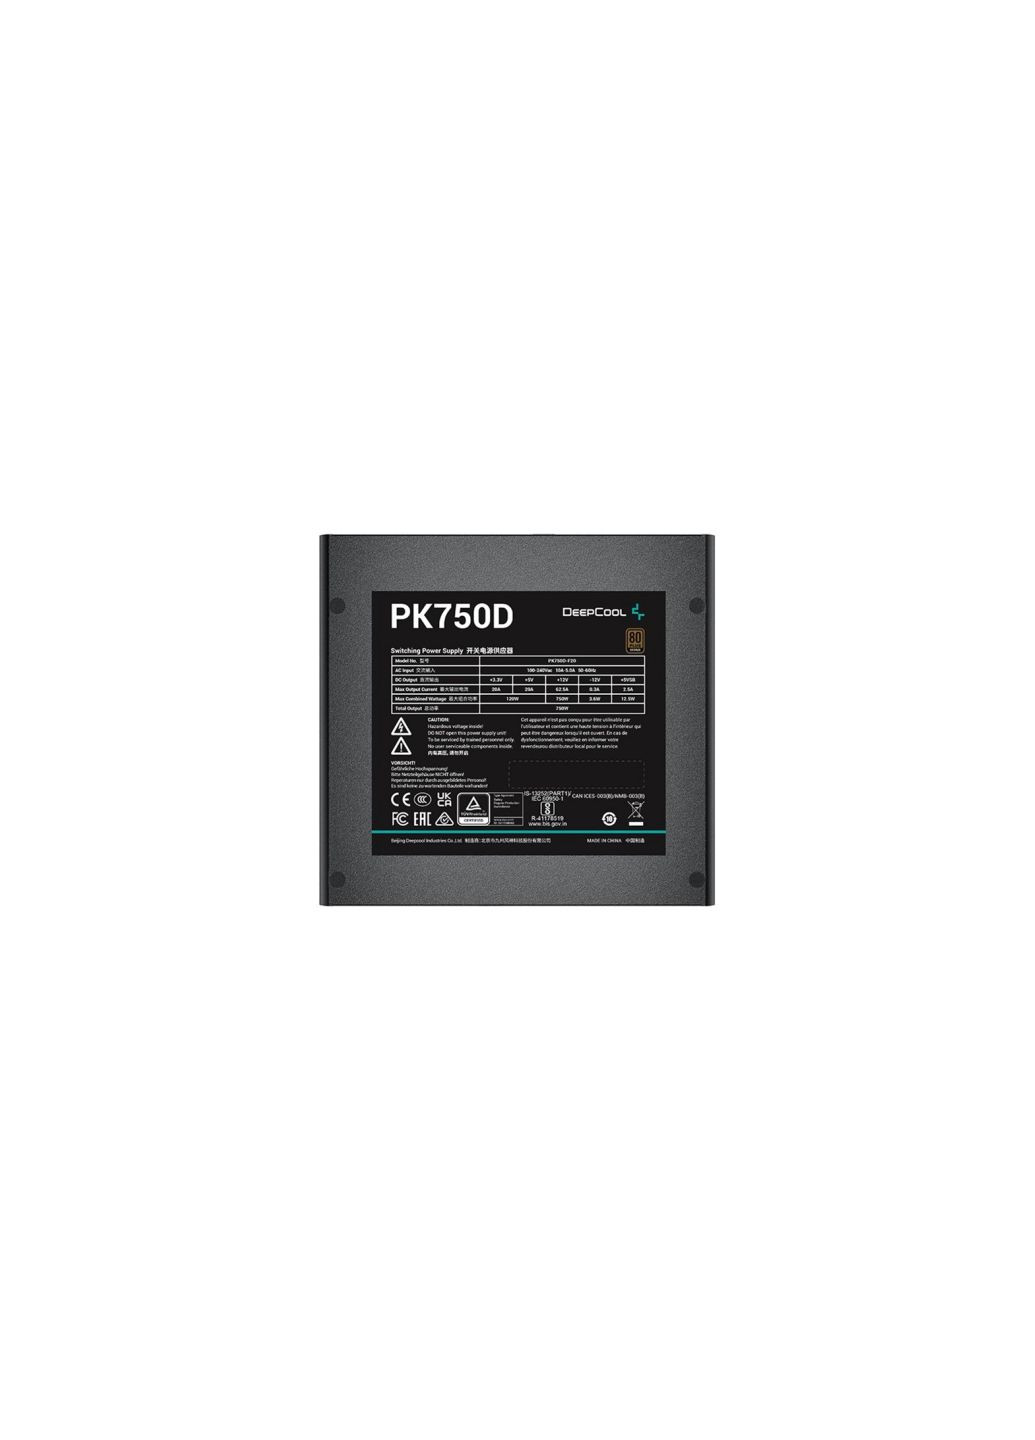 Блок питания (RPK750D-FA0B-EU) DeepCool 750w pk750d (275078100)